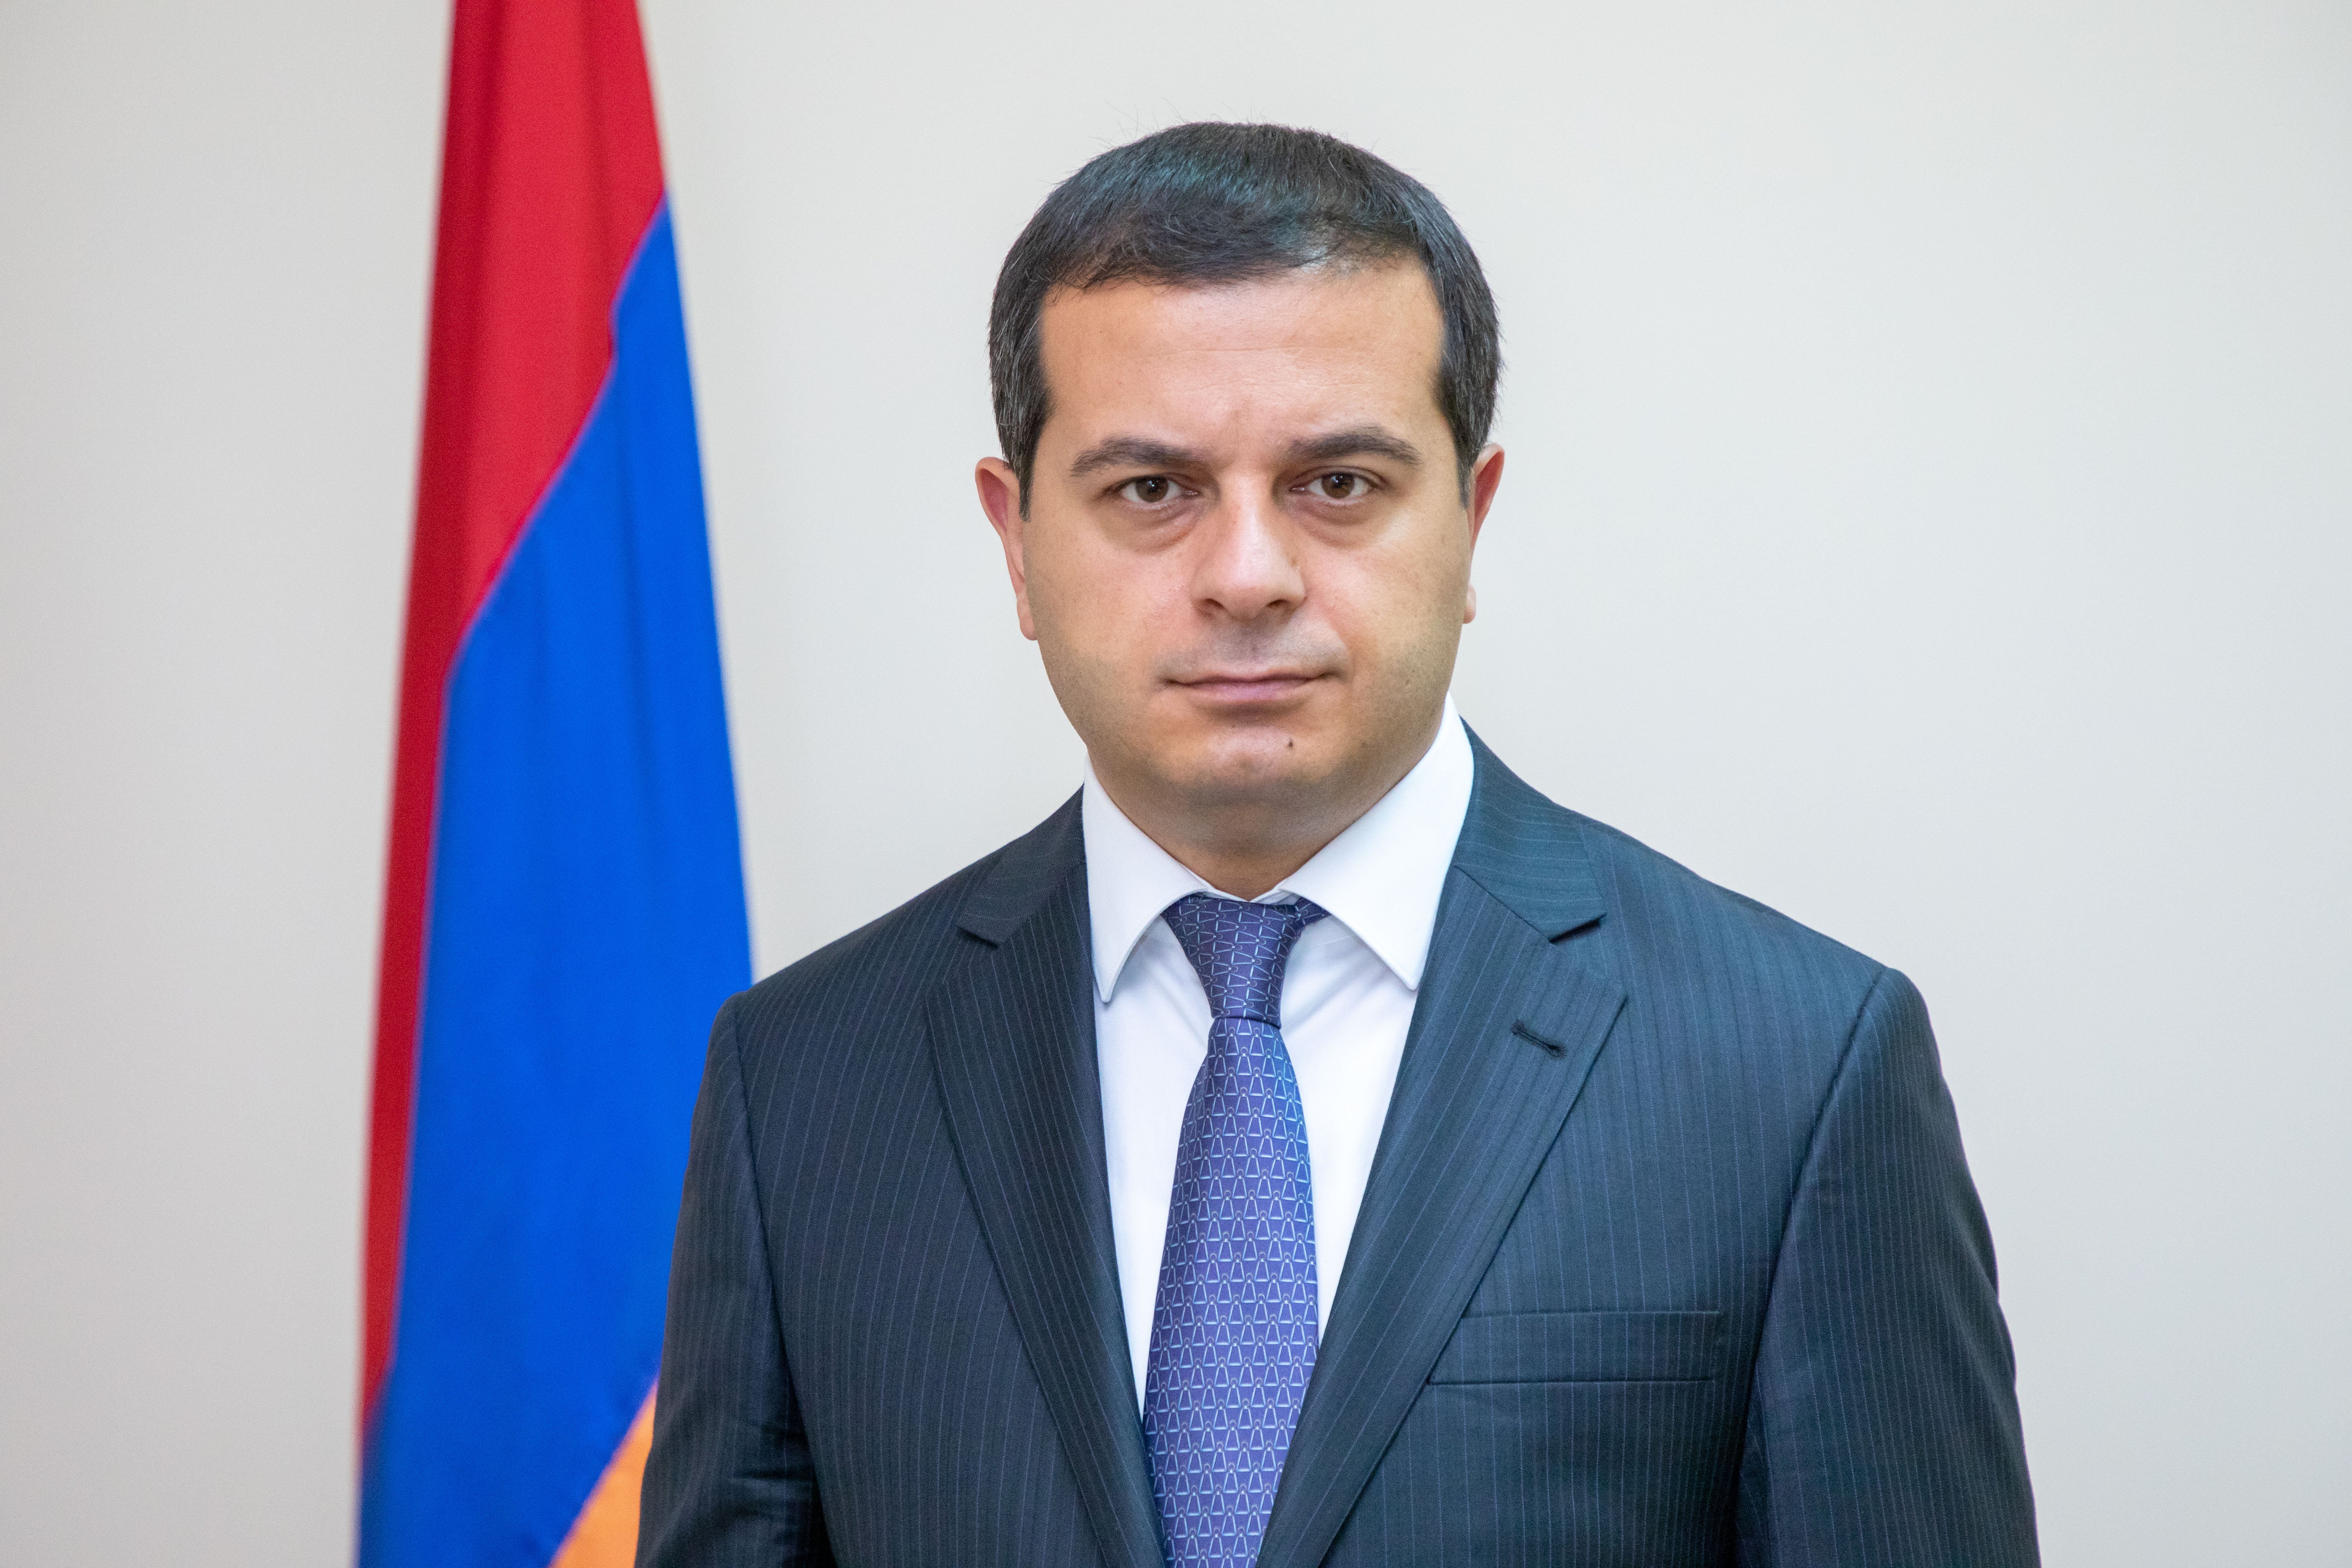 Գոռ Ալոյանը նշանակվել է ՀՀ քննչական կոմիտեի Երևան քաղաքի քննչական վարչության ճանապարհատրանսպորտային հանցագործությունների քննության բաժնի պետ